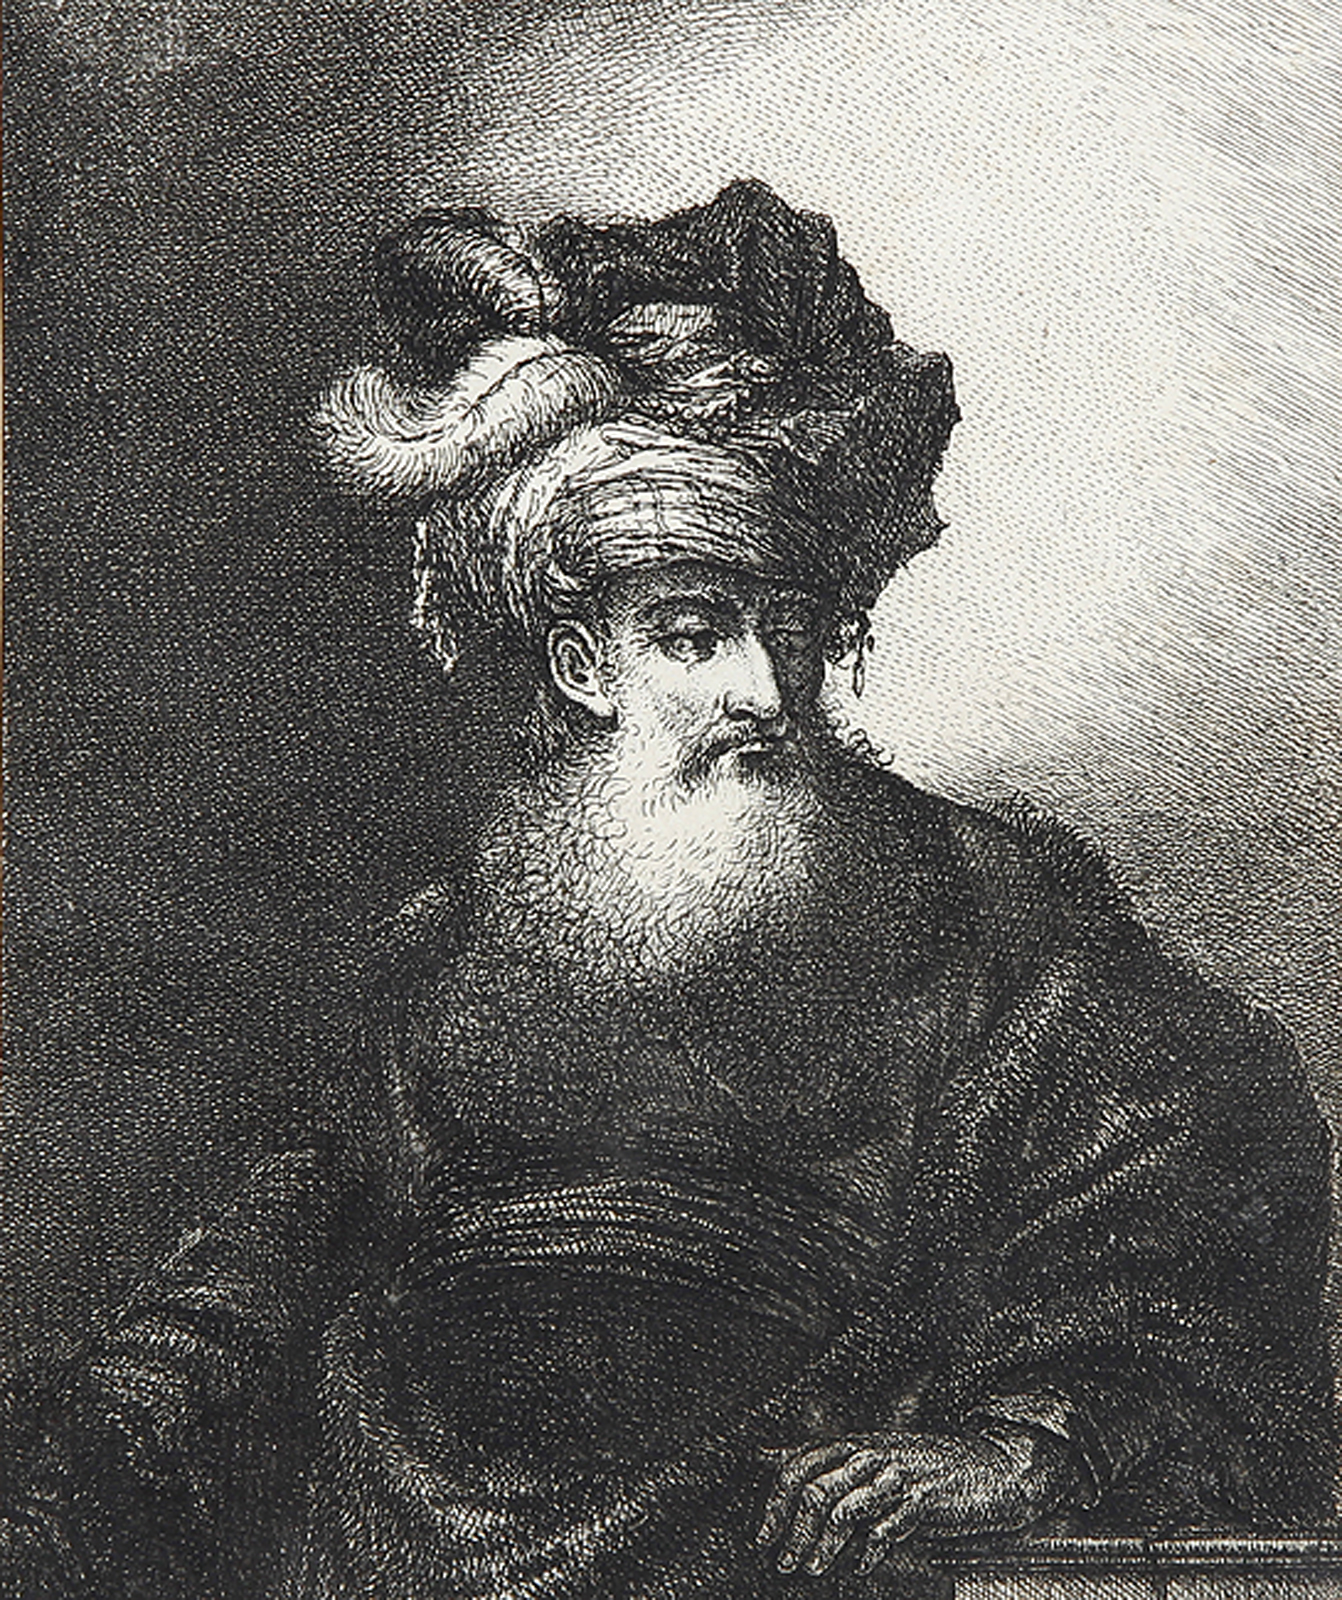 Gürtelbild eines Türken mit starkem Bart ... - Brustbild eines Alten im Profil.